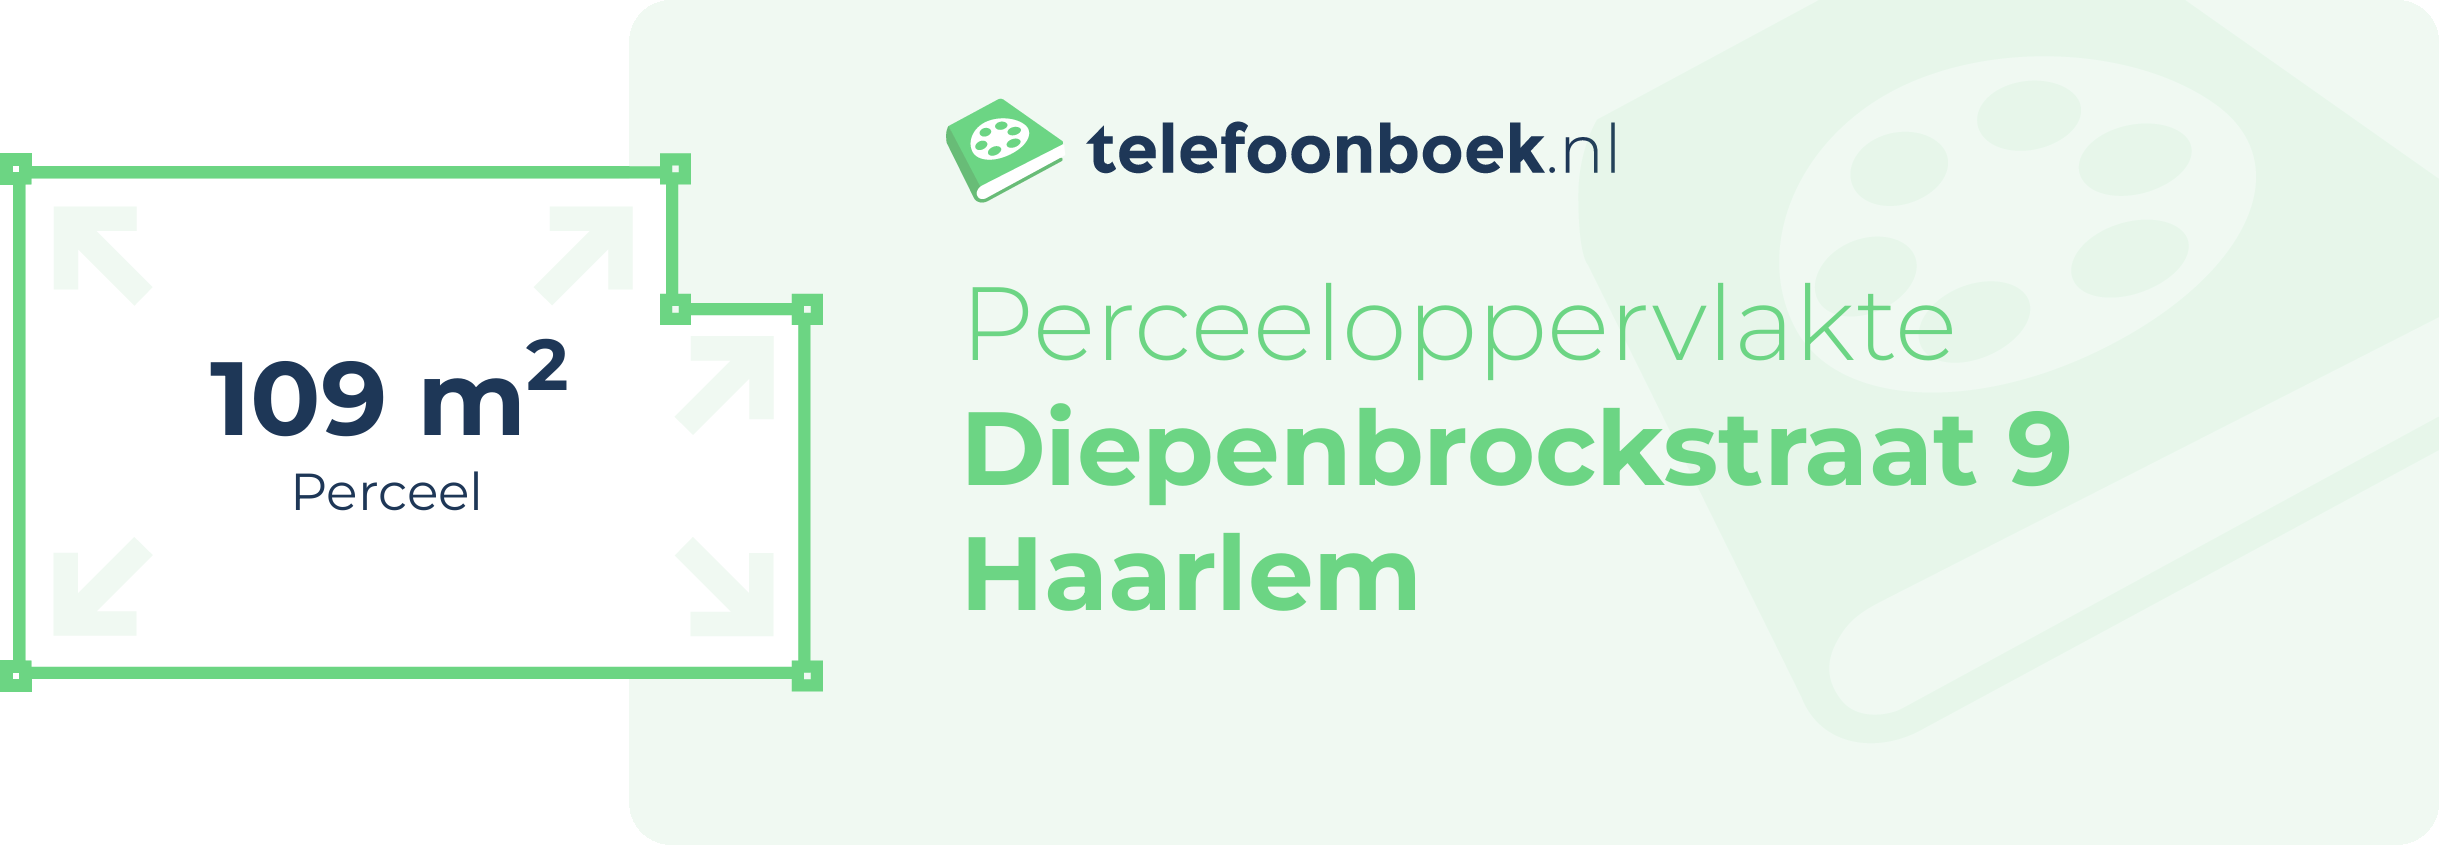 Perceeloppervlakte Diepenbrockstraat 9 Haarlem